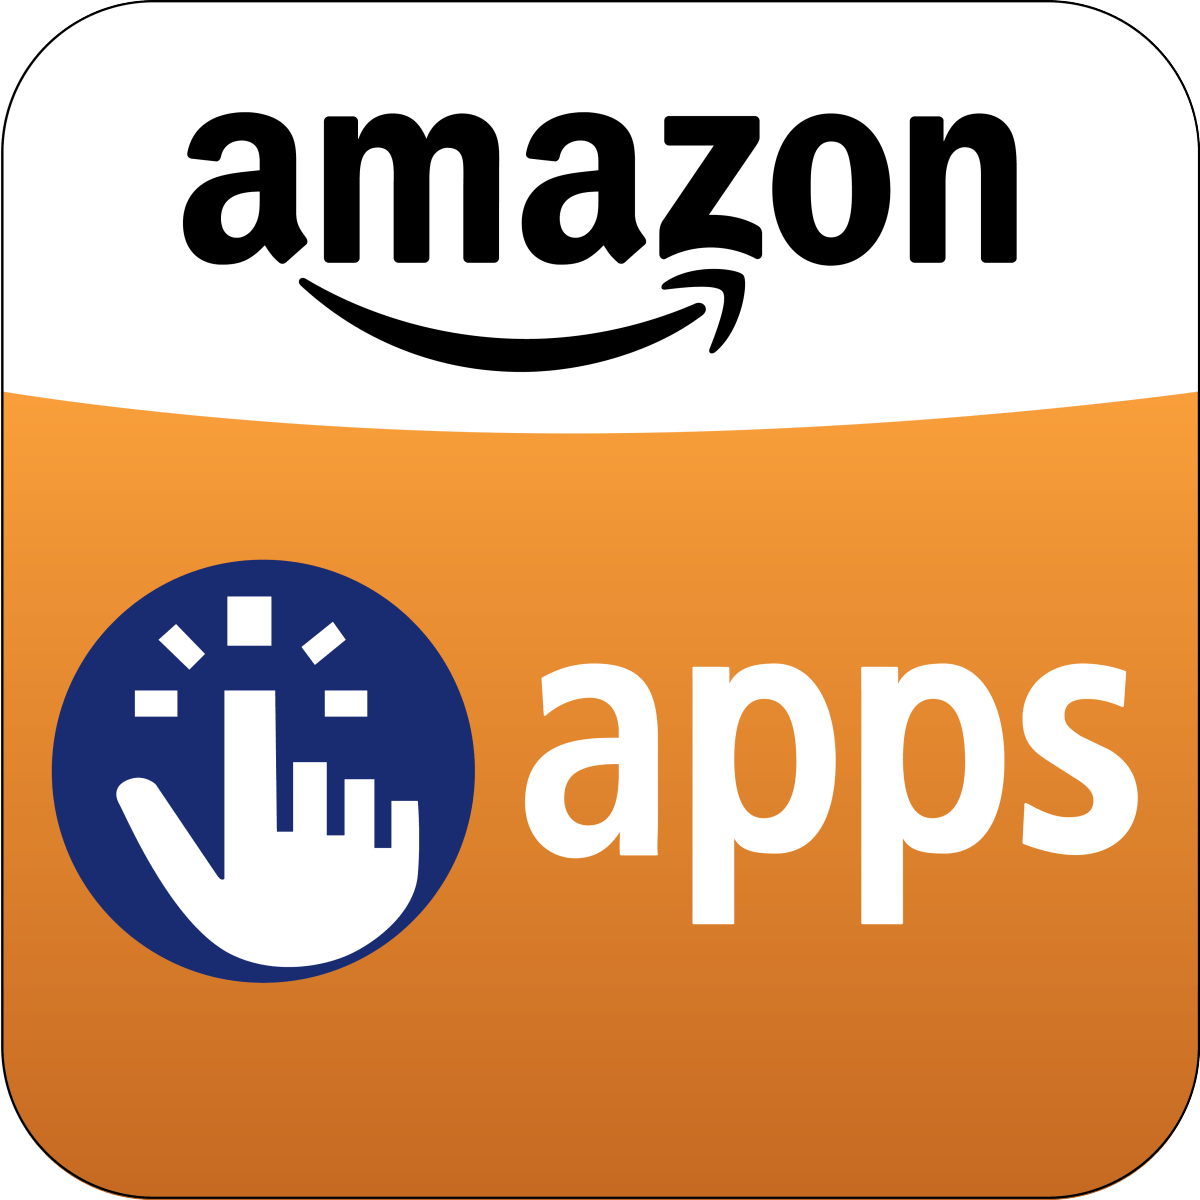 Amazon App Store Logo - Amazon App Store Logo